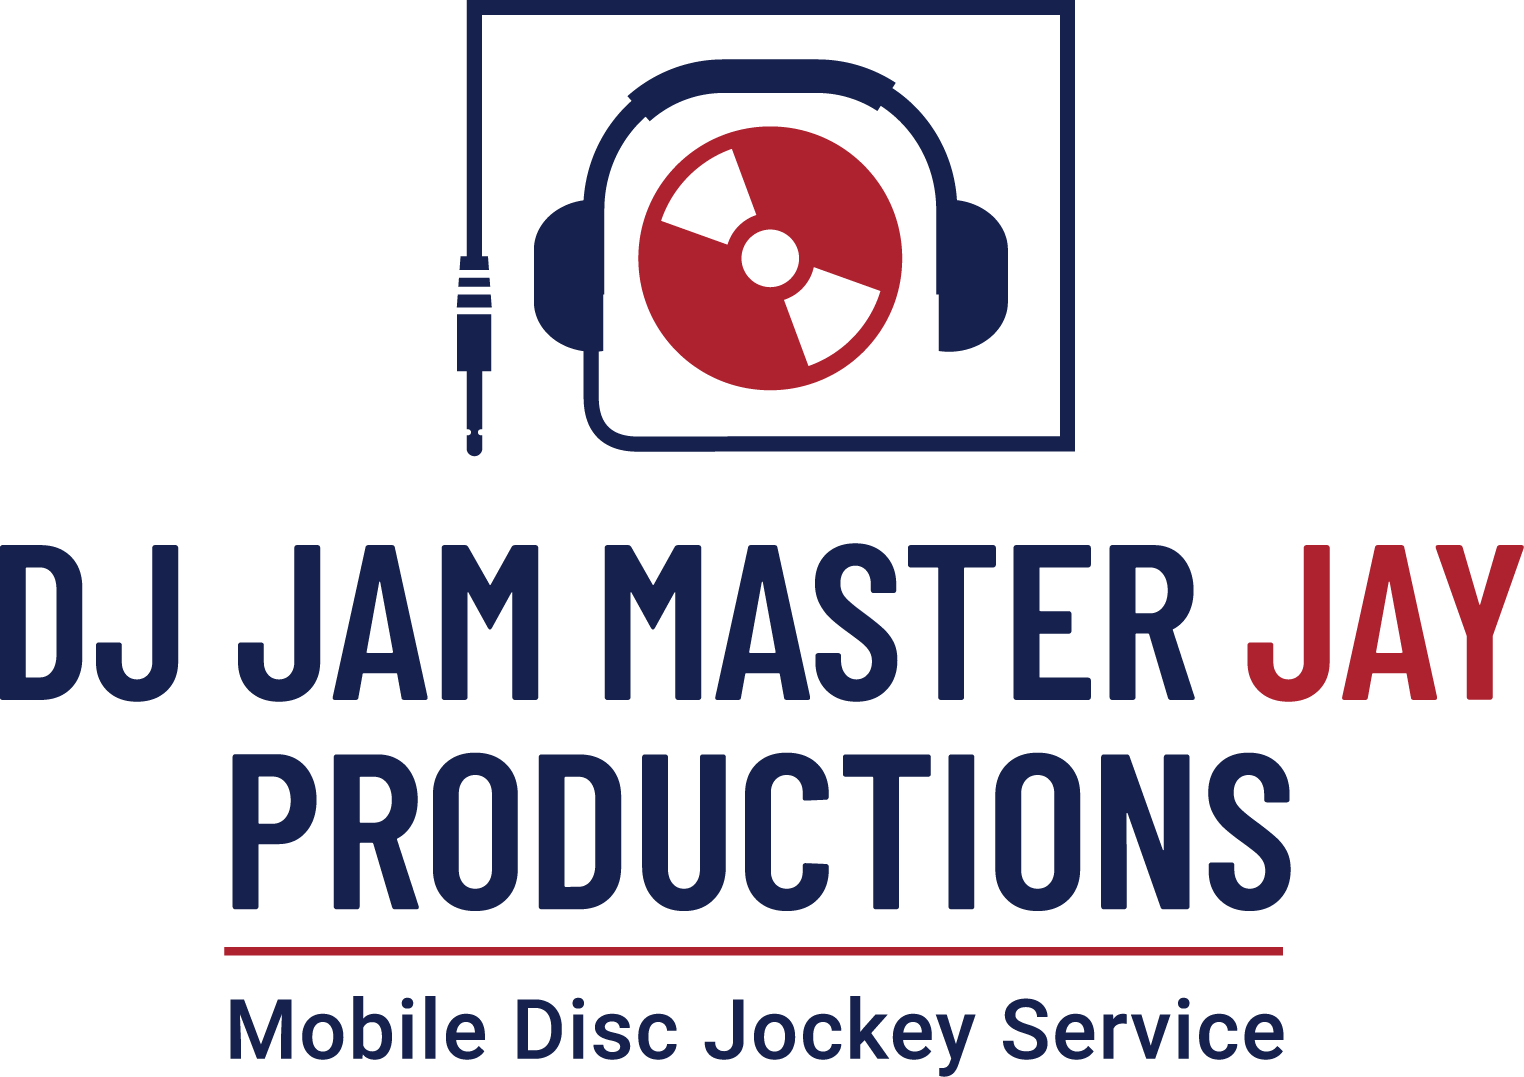 DJ Jam Master Jay Productions